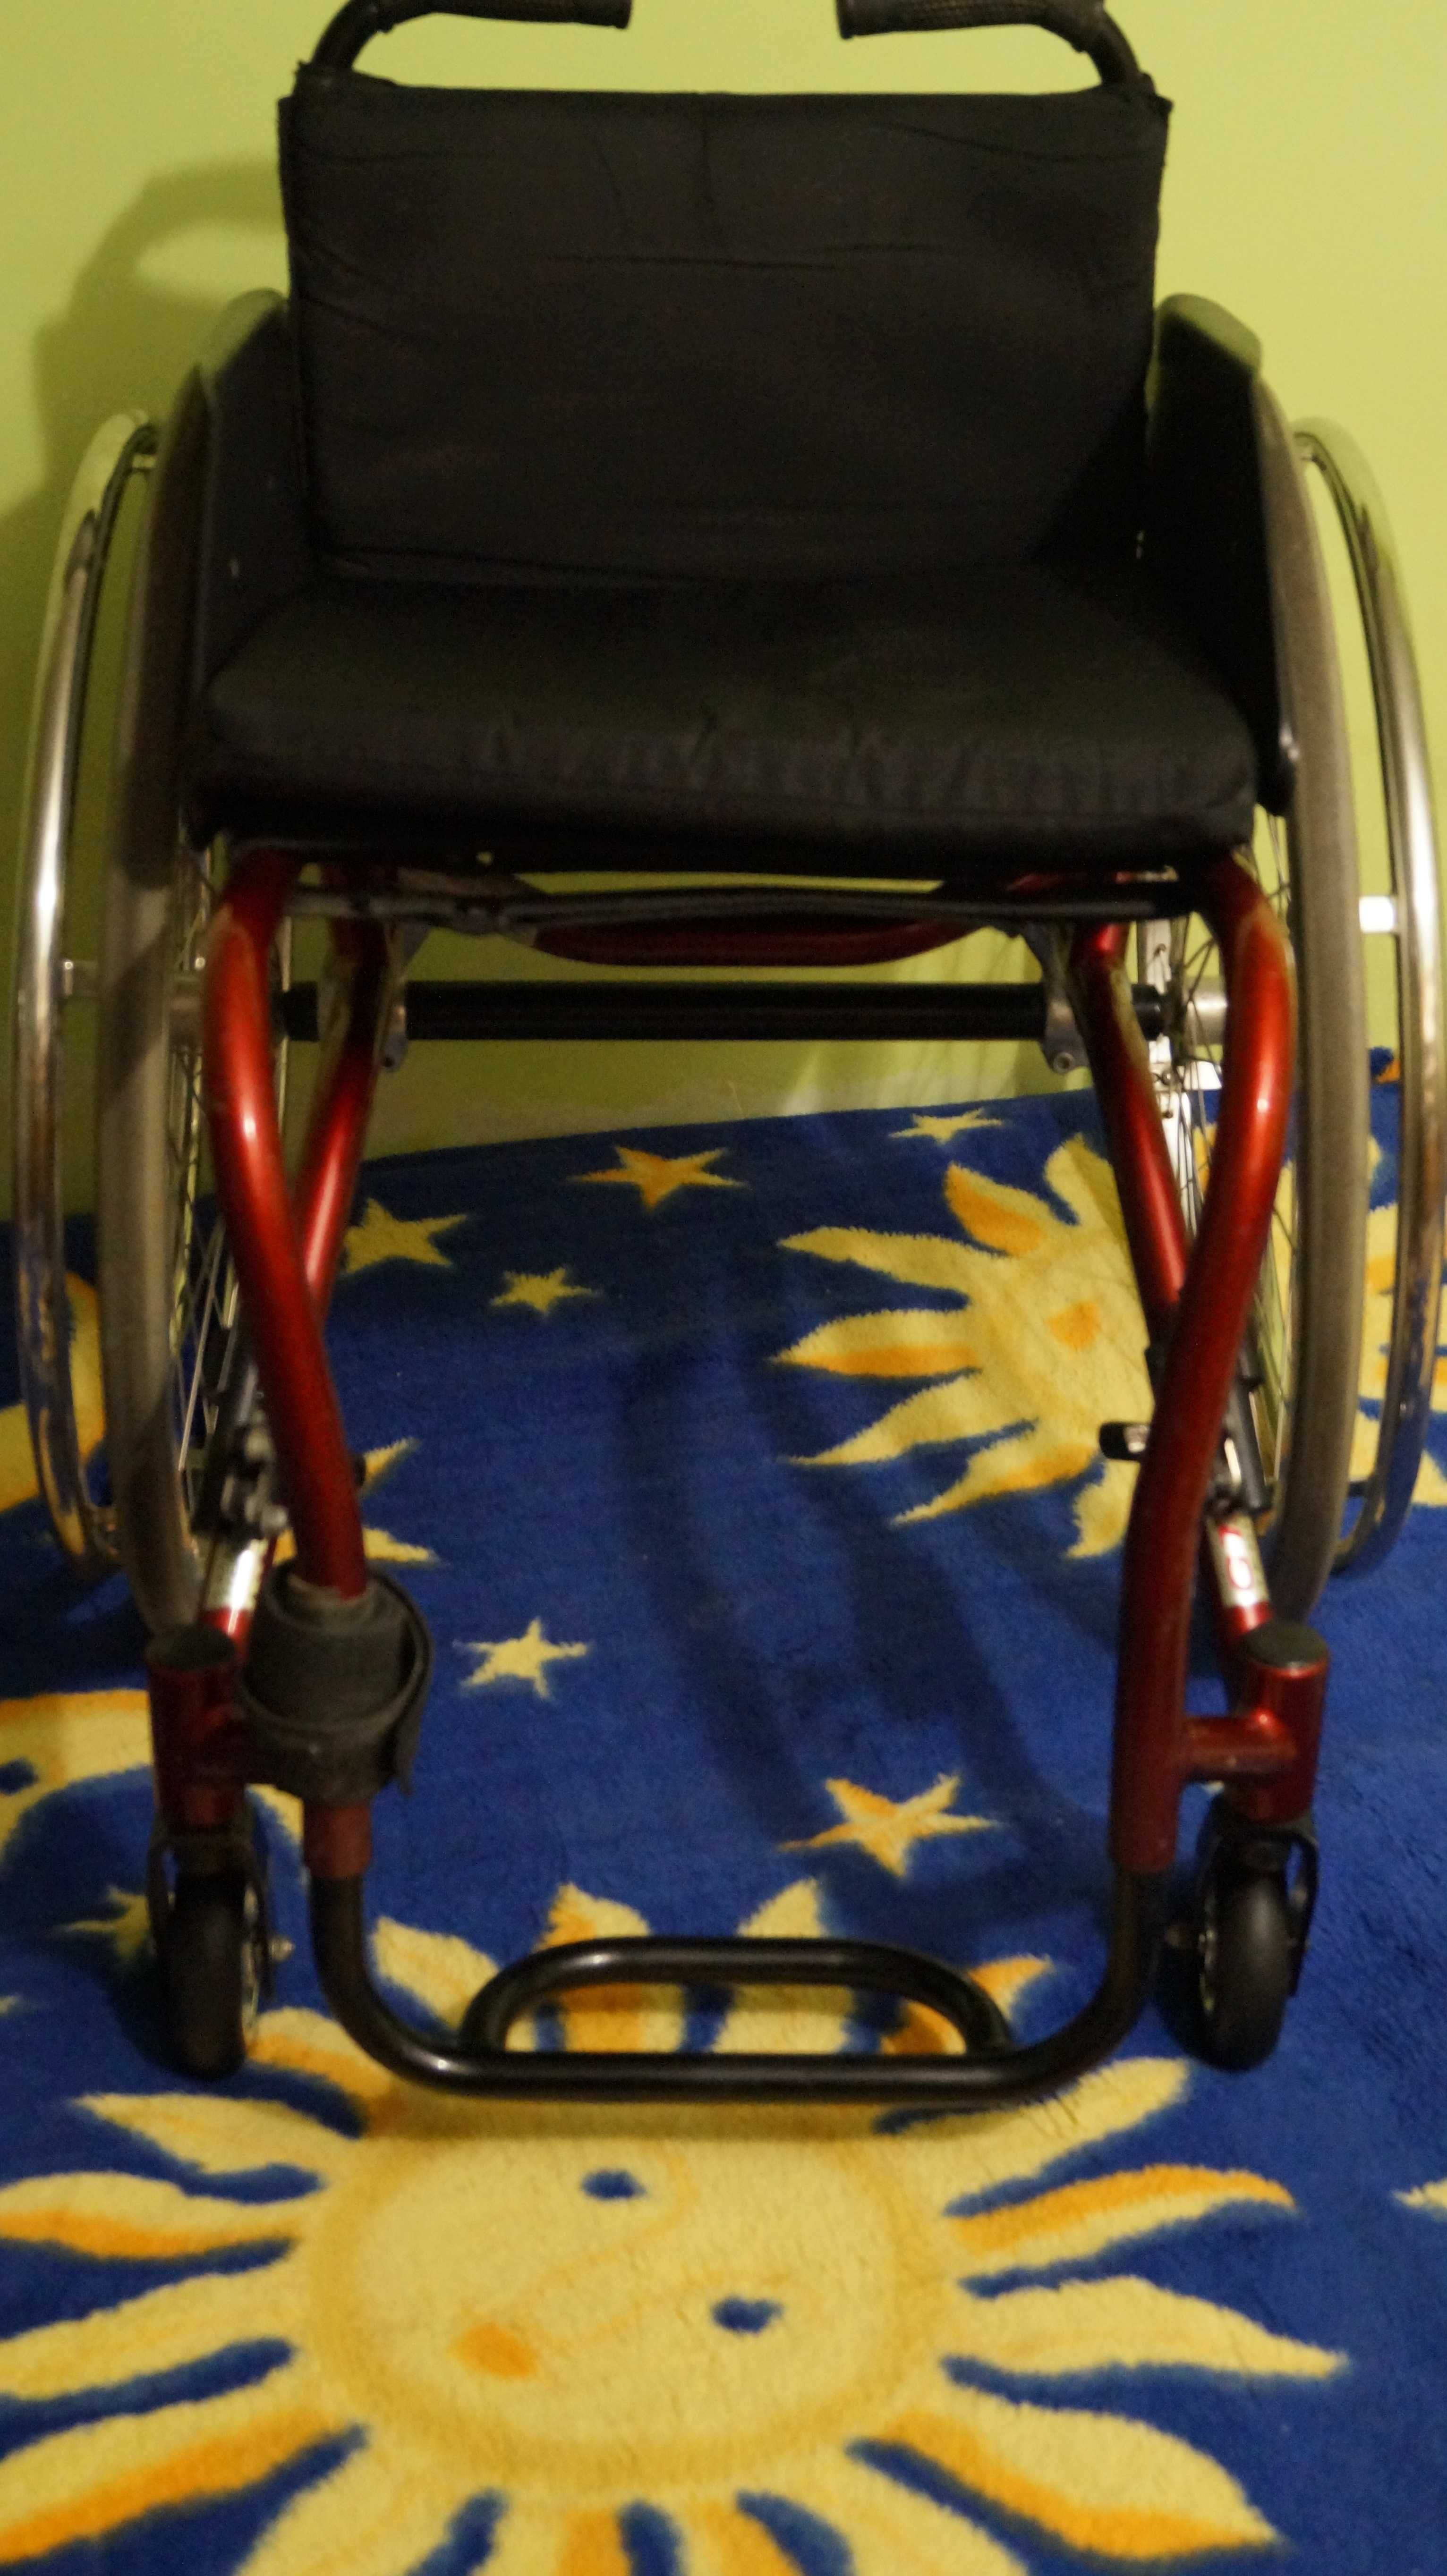 Sprzedam aktywny wózek inwalidzki